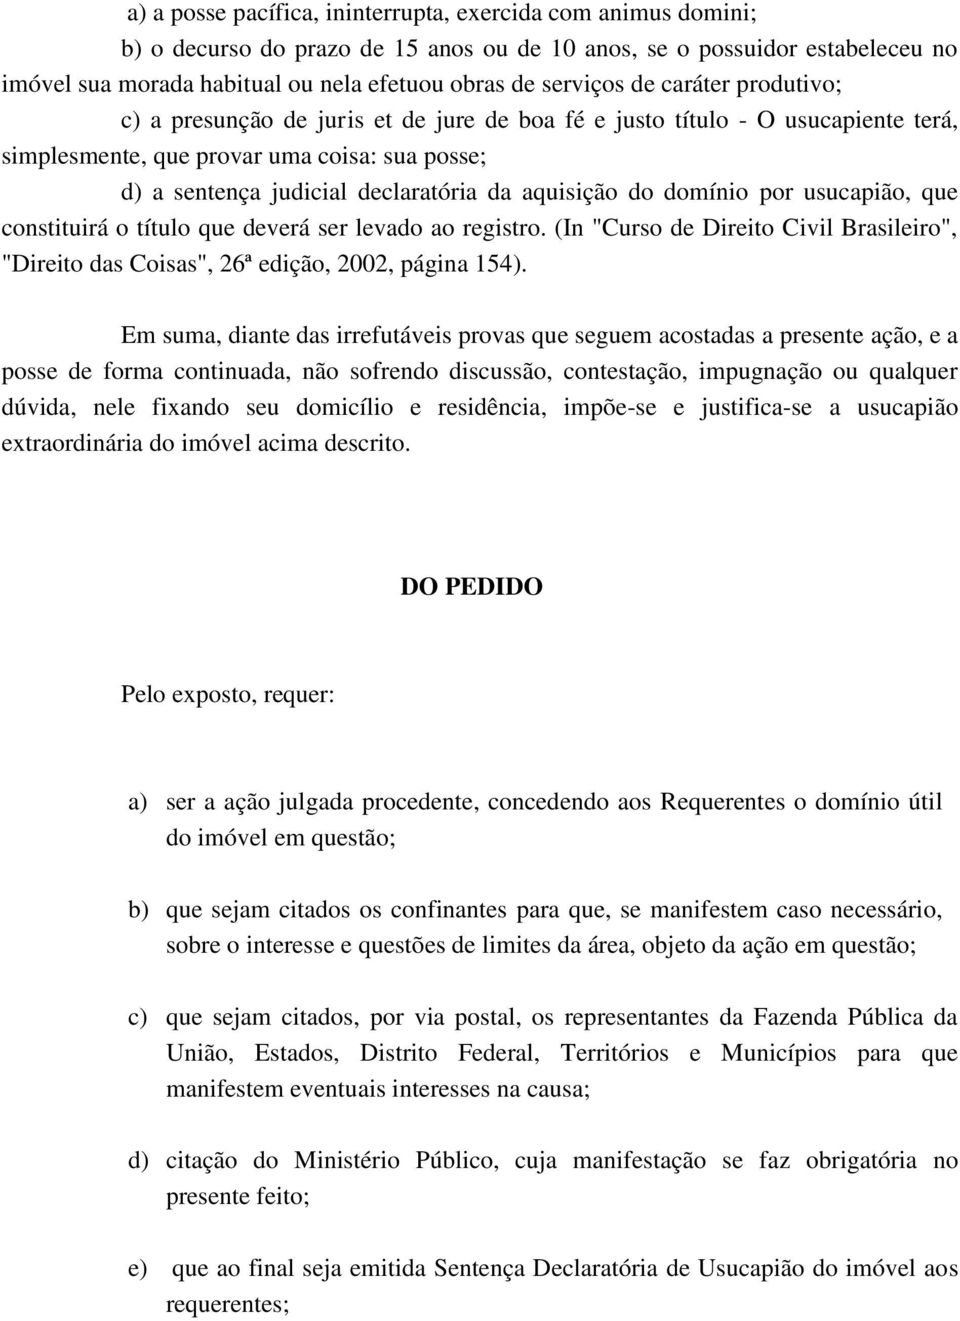 aquisição do domínio por usucapião, que constituirá o título que deverá ser levado ao registro. (In "Curso de Direito Civil Brasileiro", "Direito das Coisas", 26ª edição, 2002, página 154).